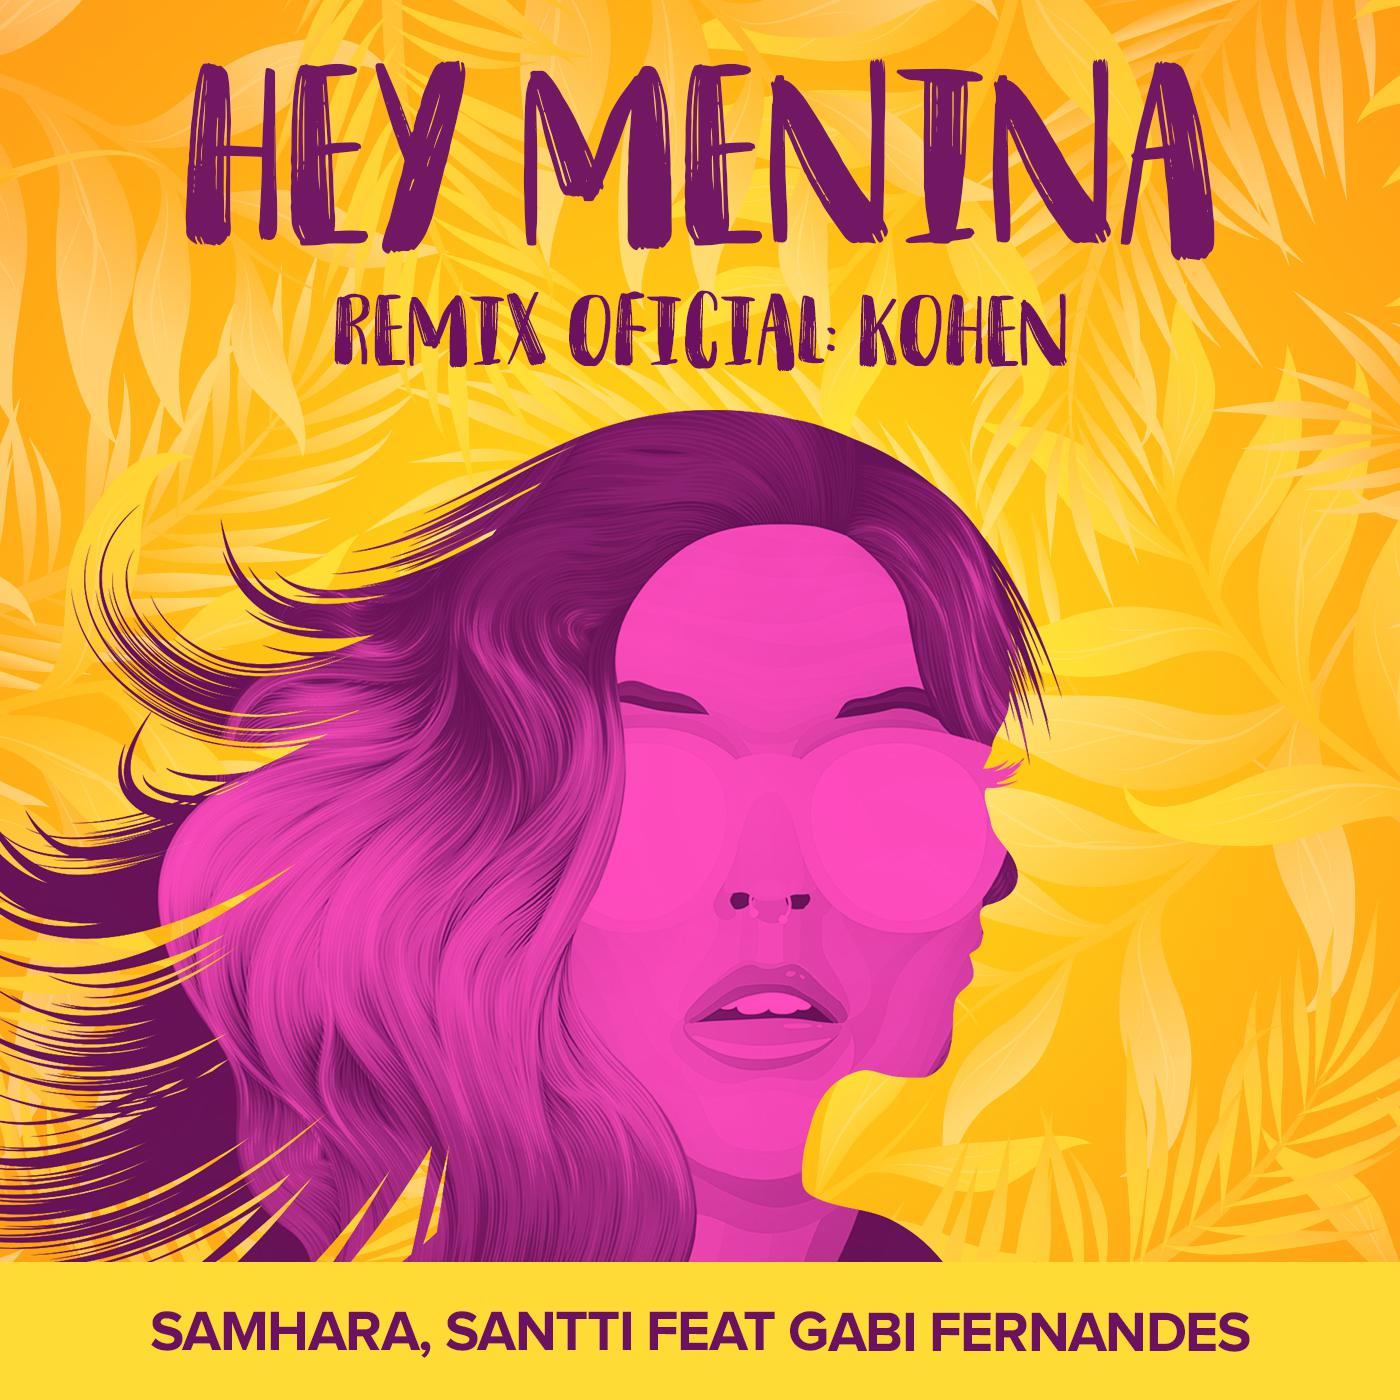 Hey Menina (Kohen Remix)